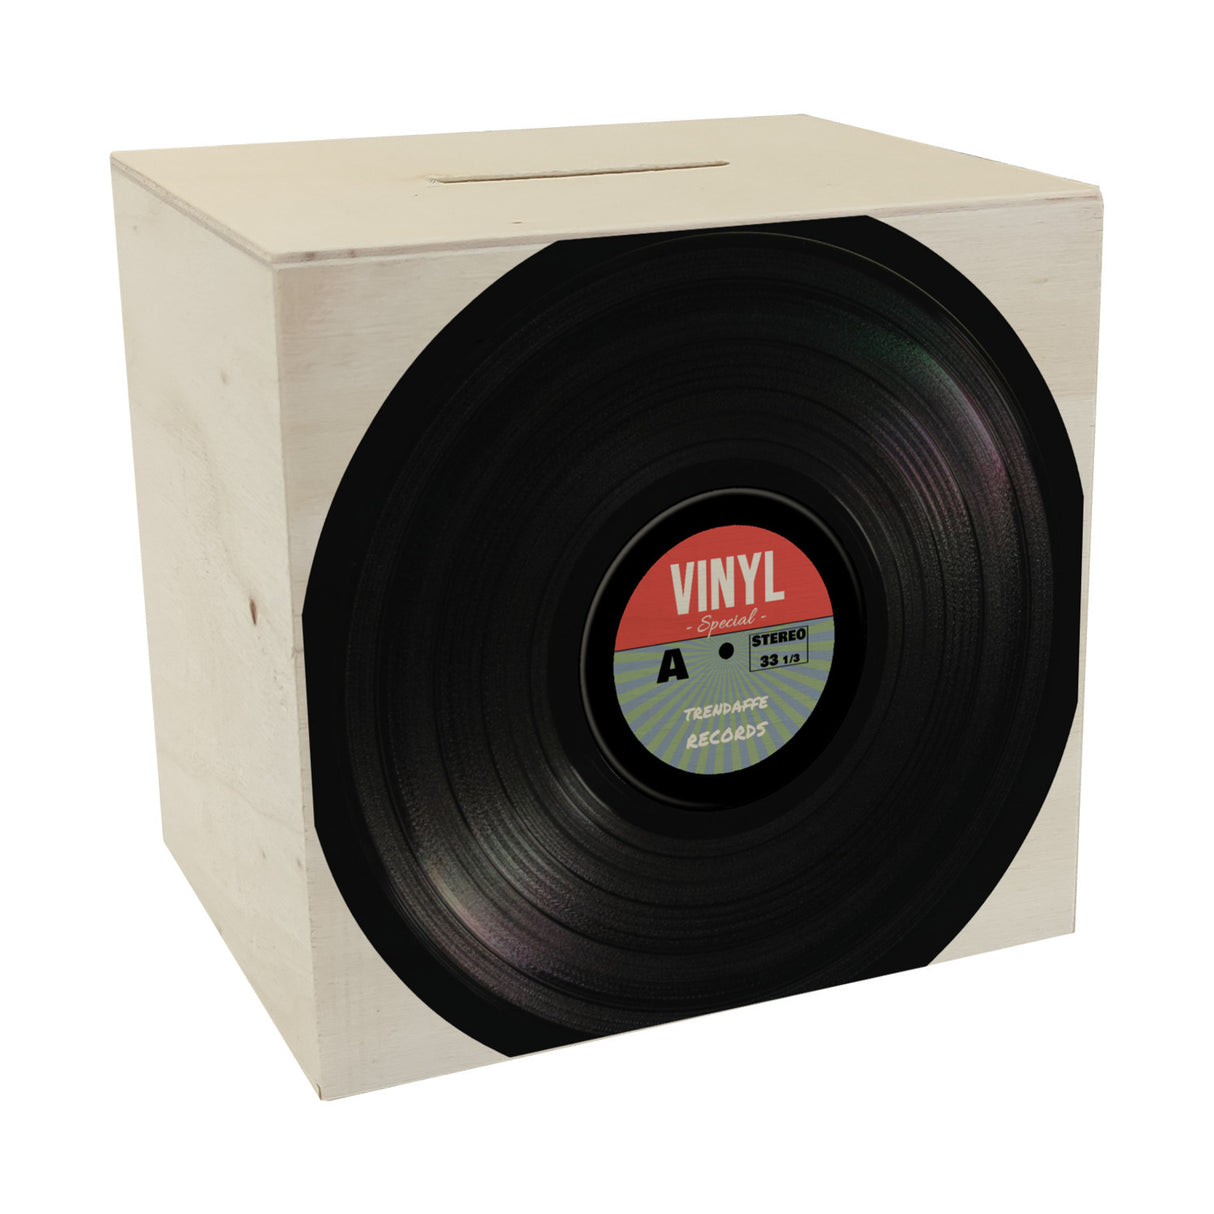 Spardose aus Keramik im Retro Vinyl Schallplattendesign RocknRoll-Stil